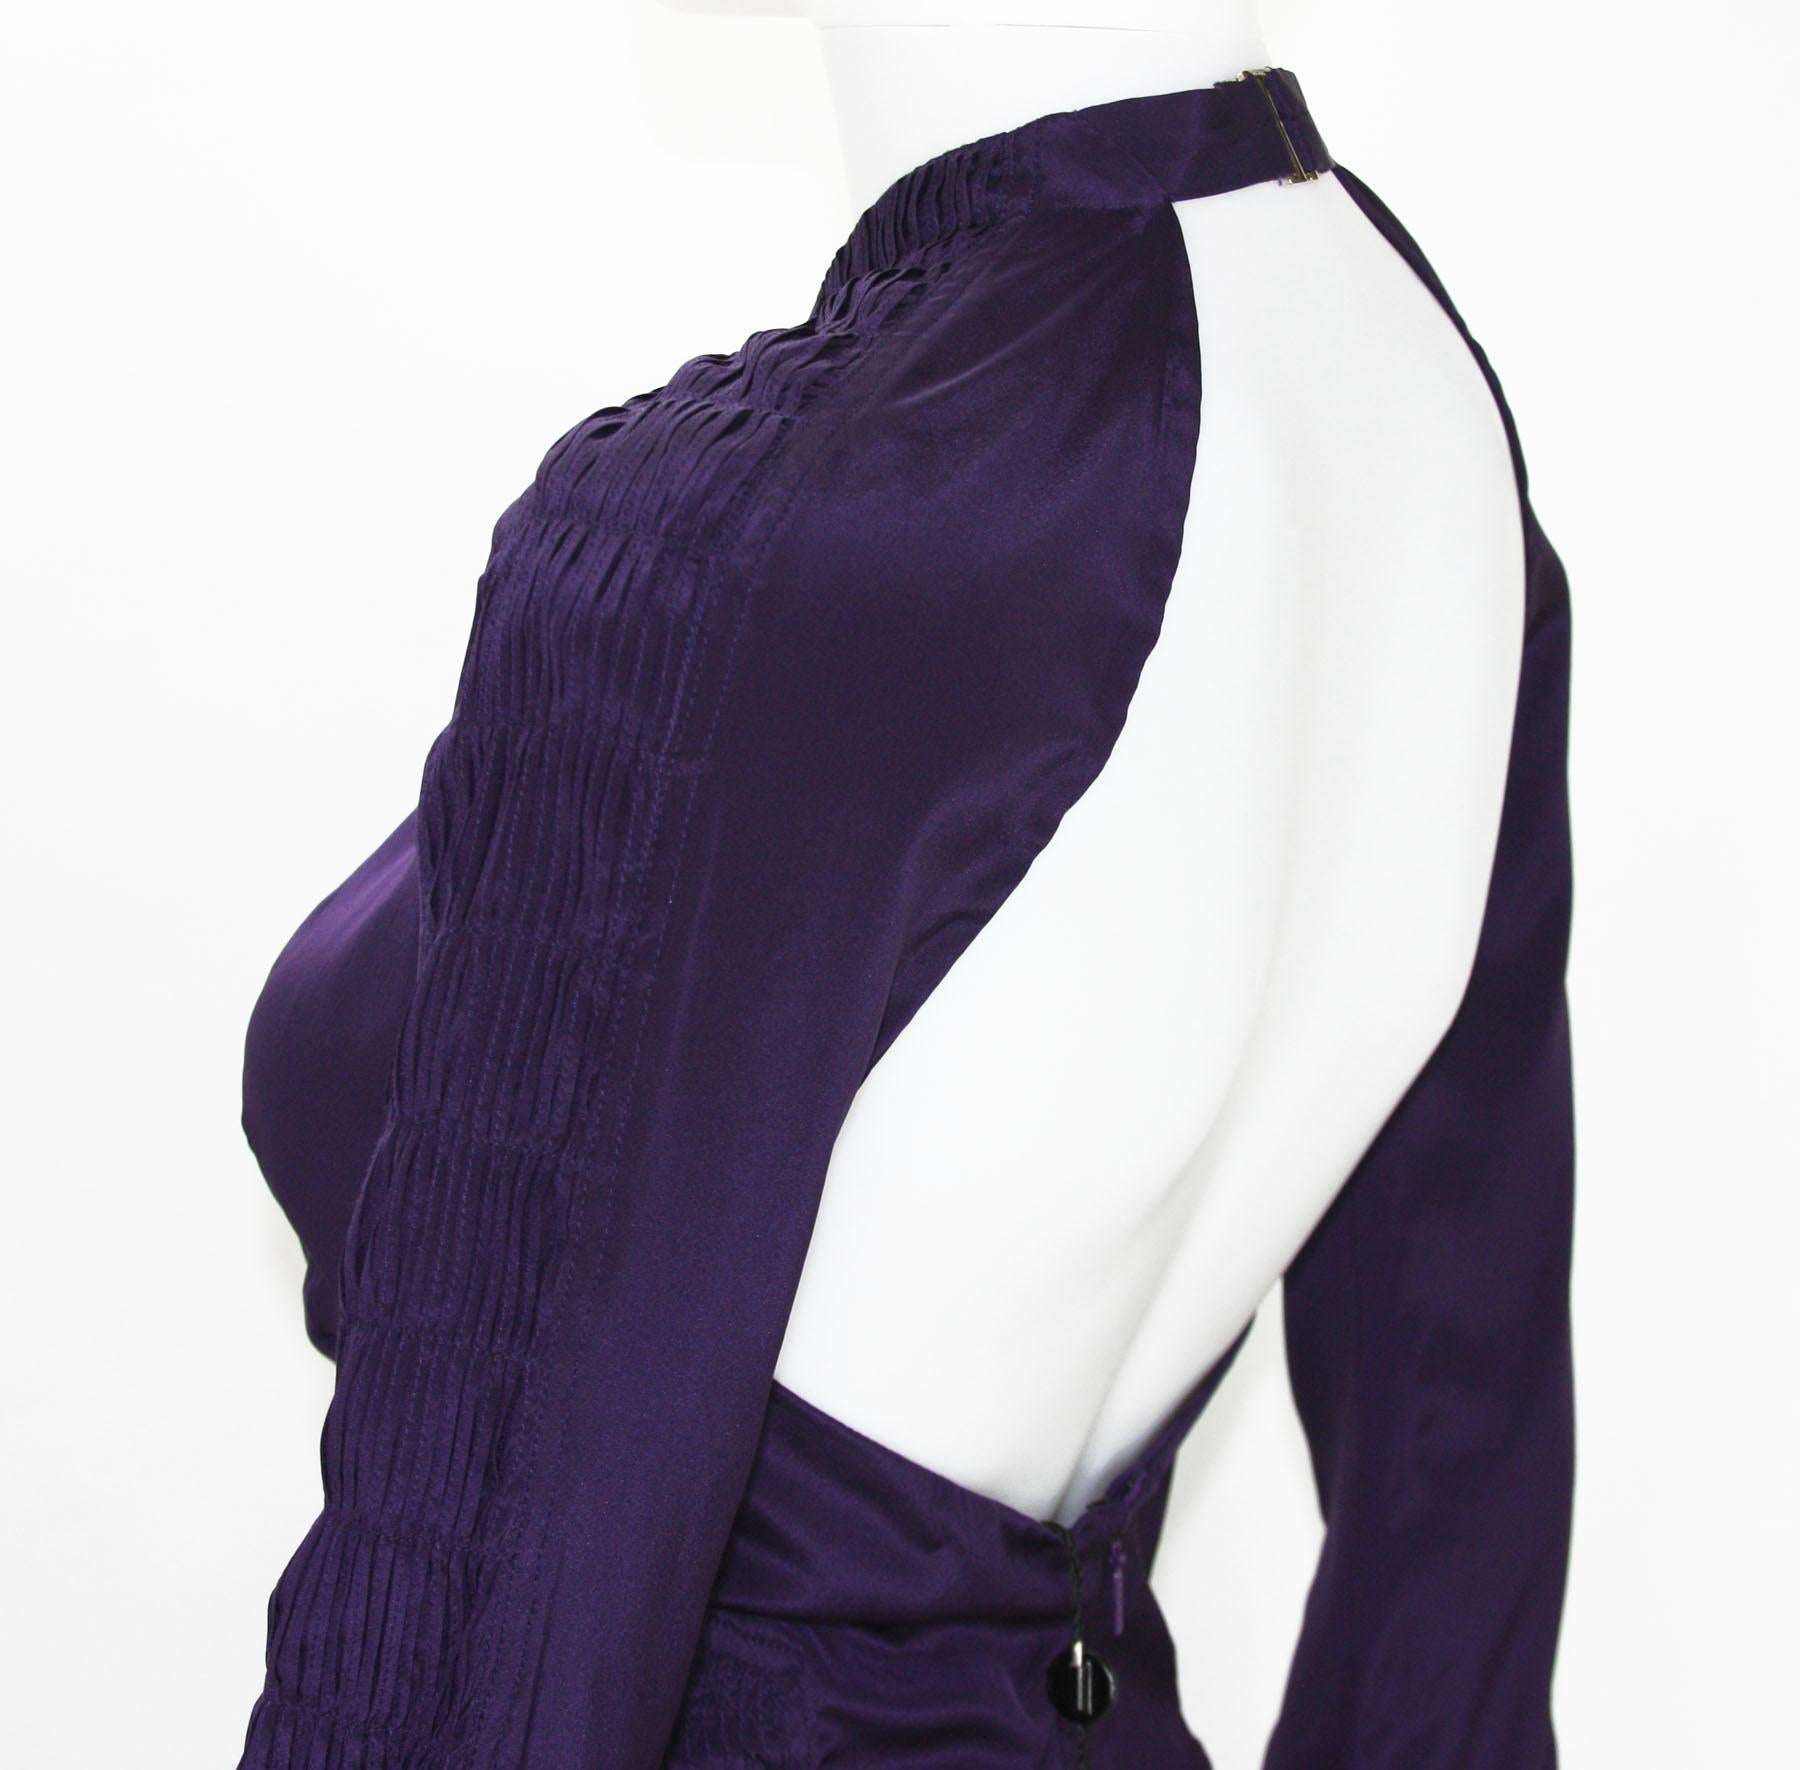 Tom Ford for Gucci, robe dos nu plongeant en soie violet profond, défilé P/É 2004, taille 38 et 44, neuve en vente 4